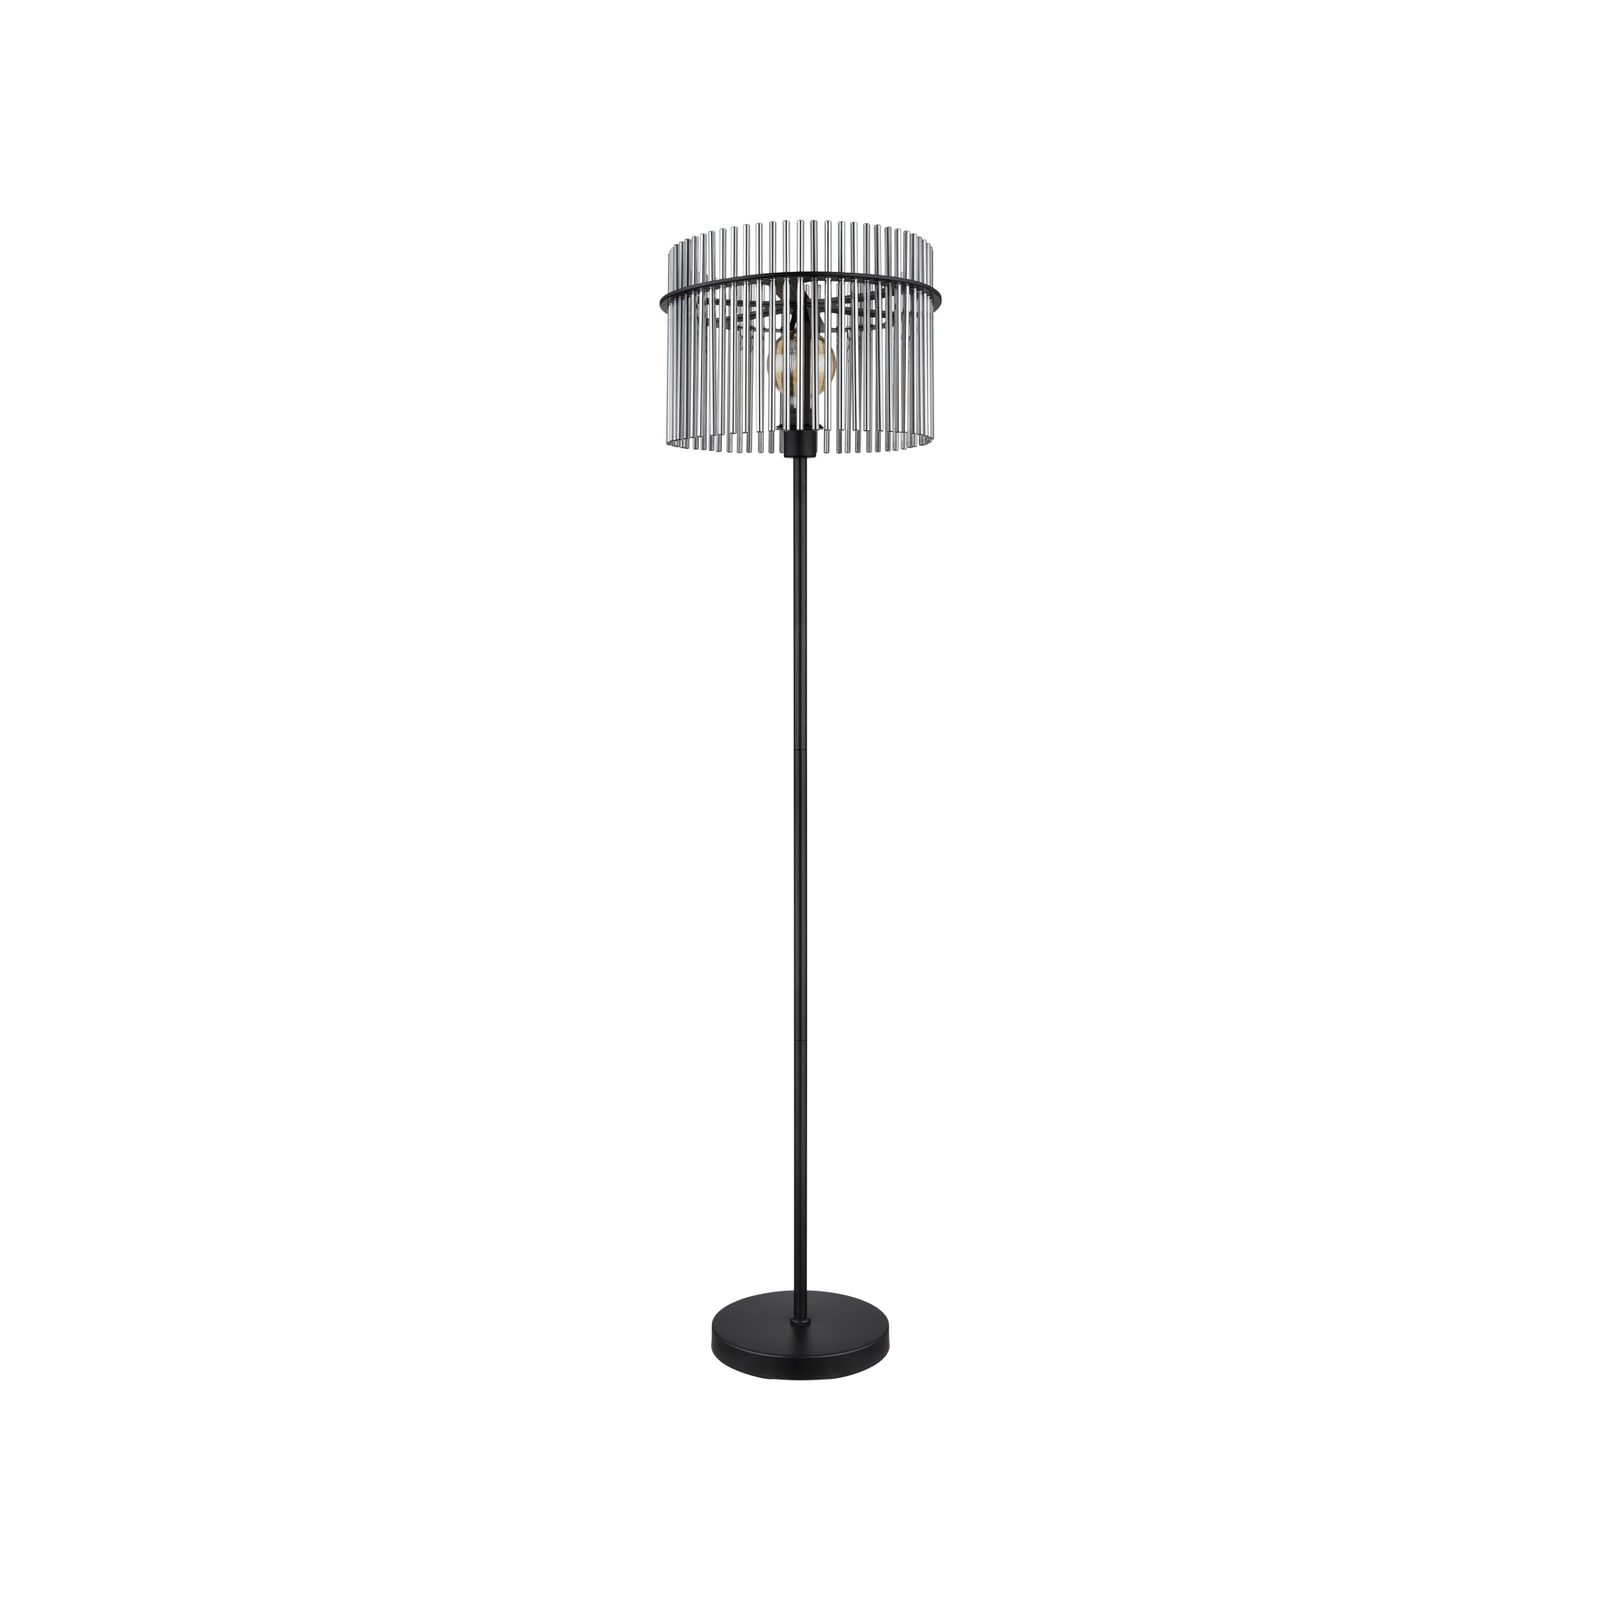 Vloerlamp Gorley, hoogte 152 cm, rookgrijs, glas/metaal